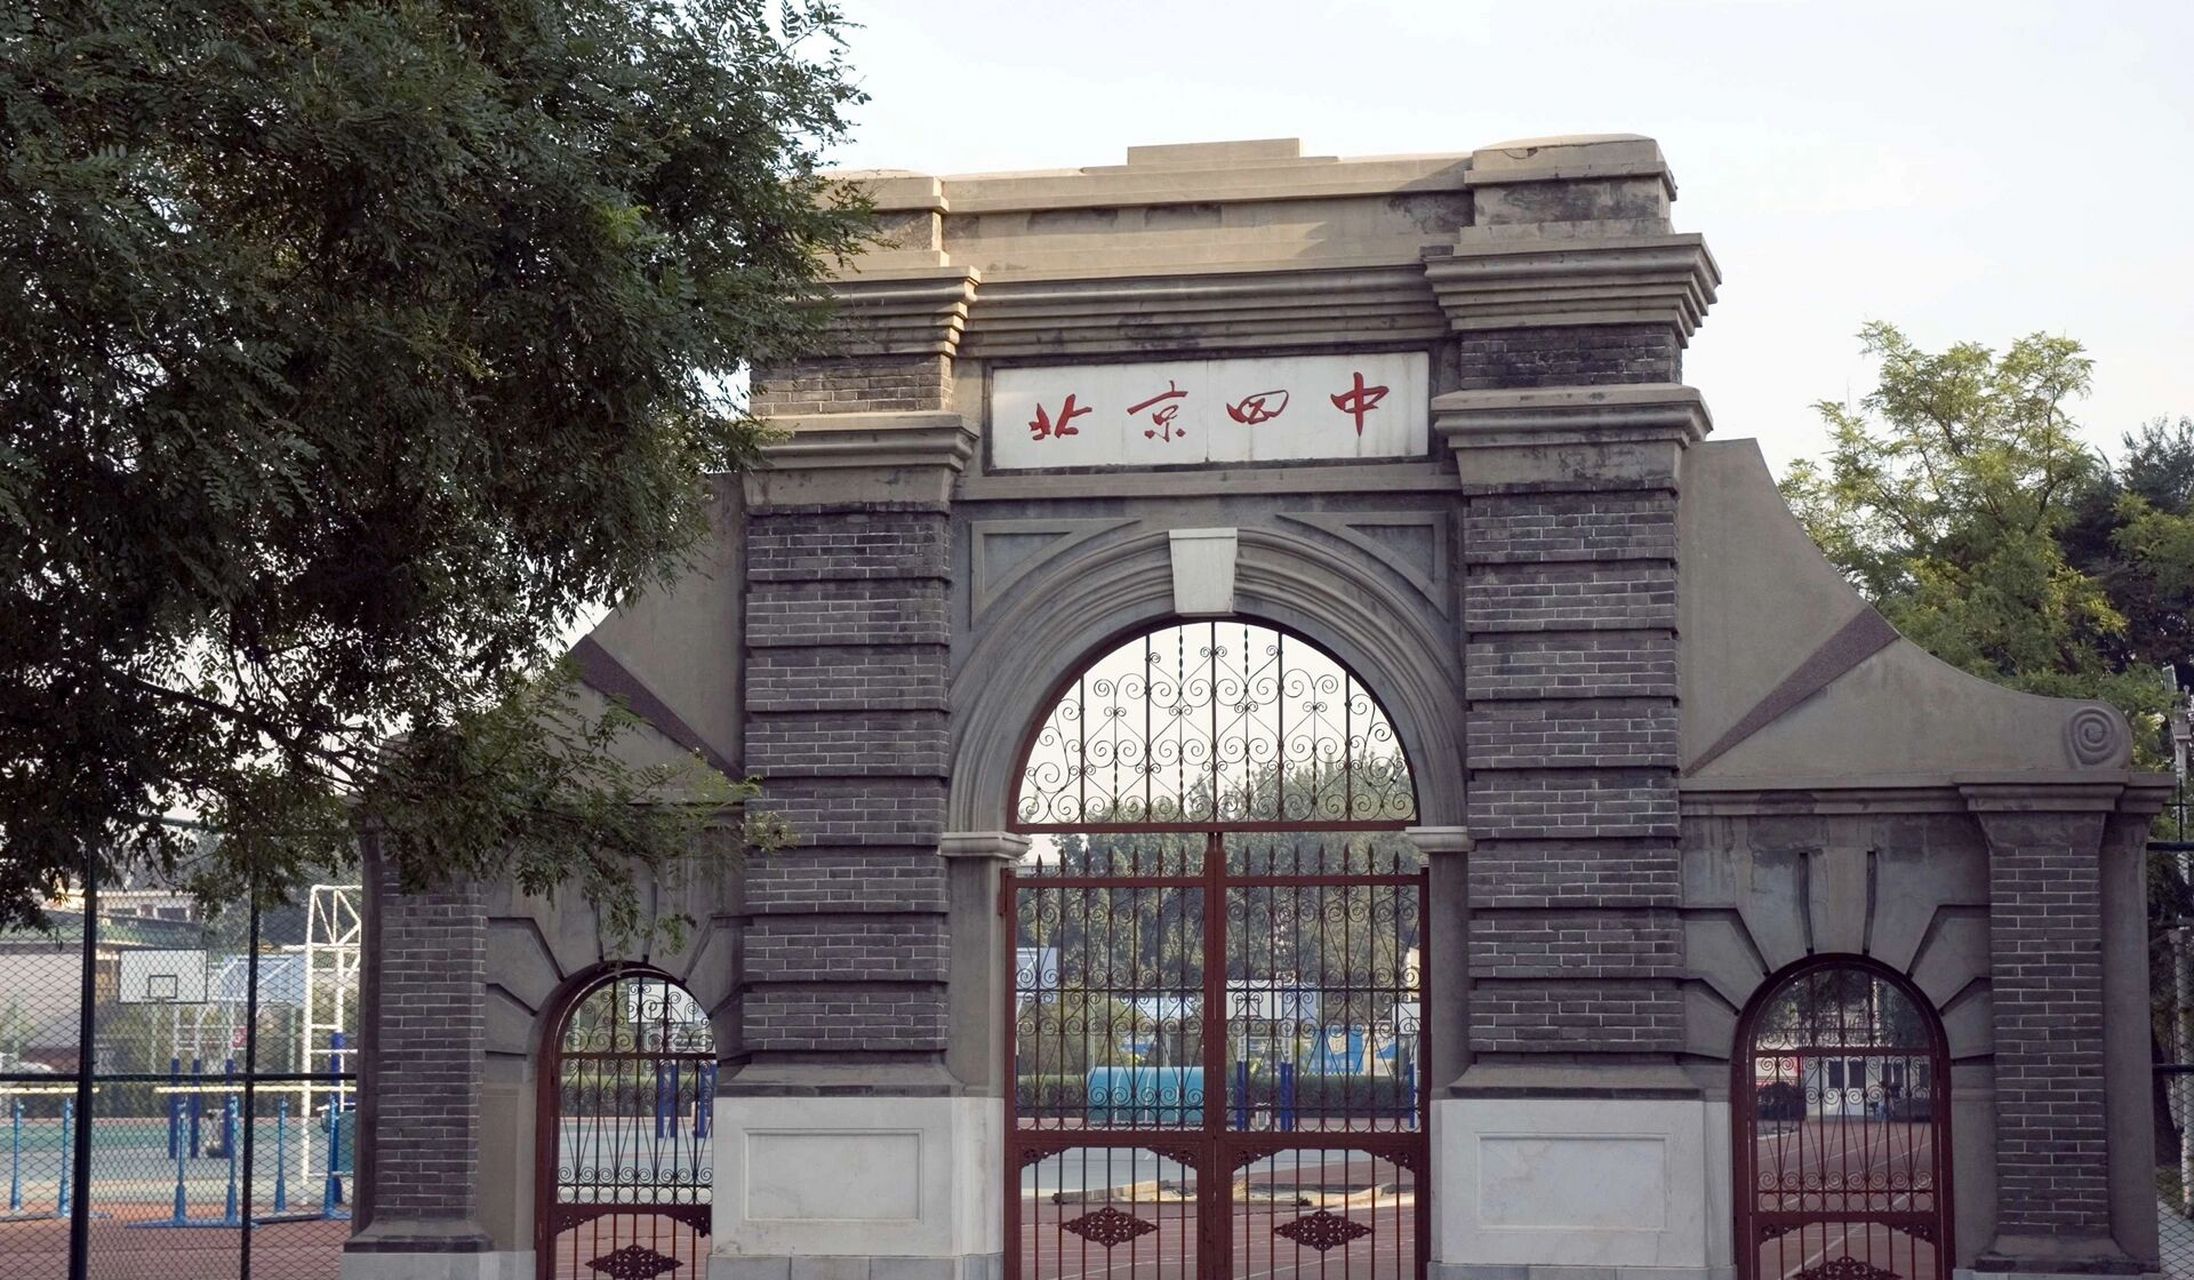 北京四中是北京市重点中学,创建于1907年,初名为顺天中学堂,1912年